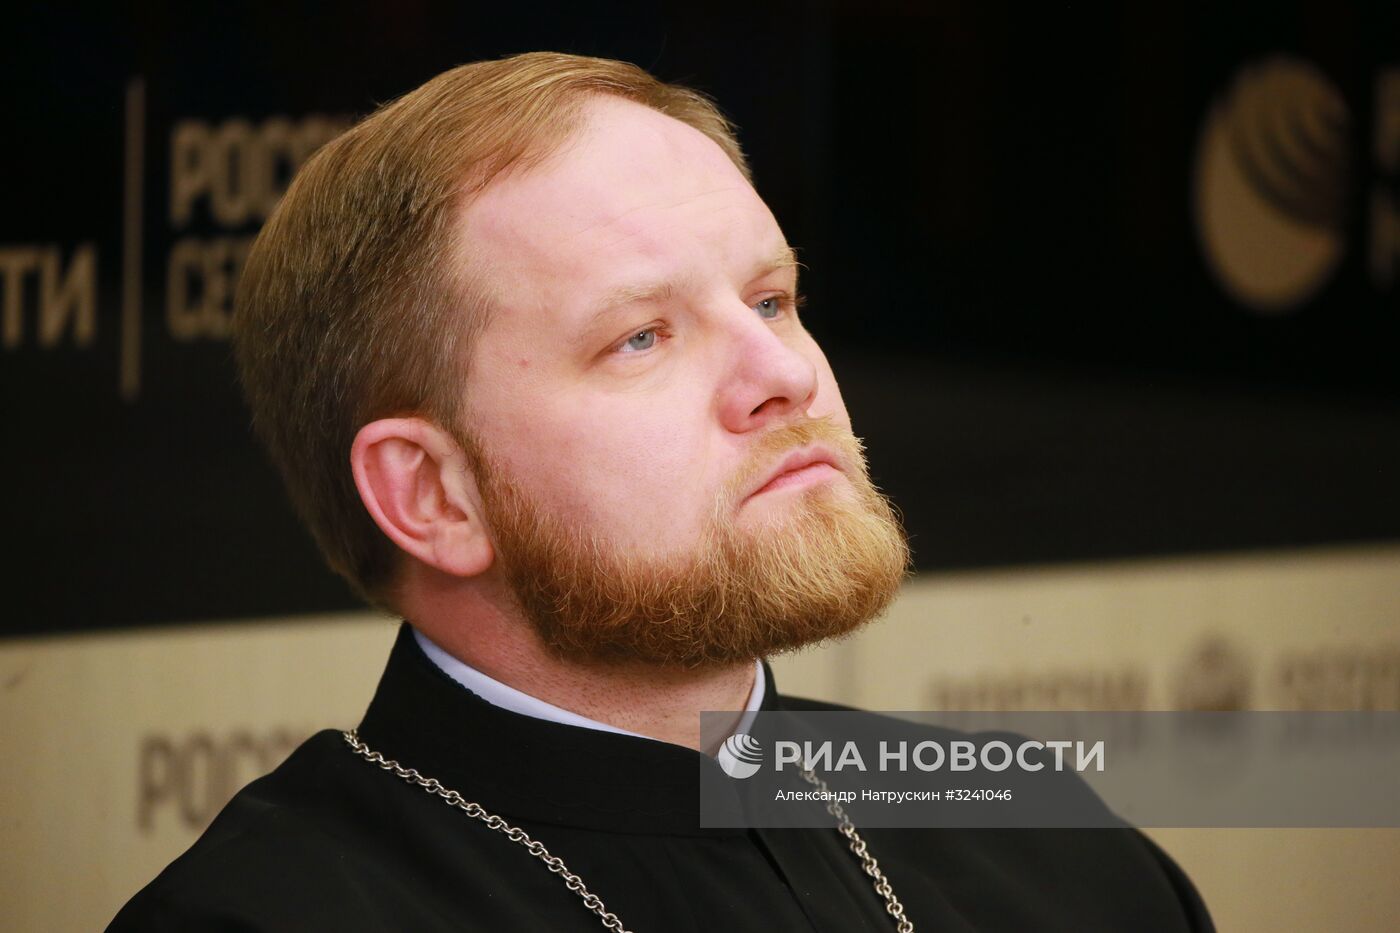 Пресс-конференция, посвященная открытию Архиерейского Собора Русской Православной Церкви